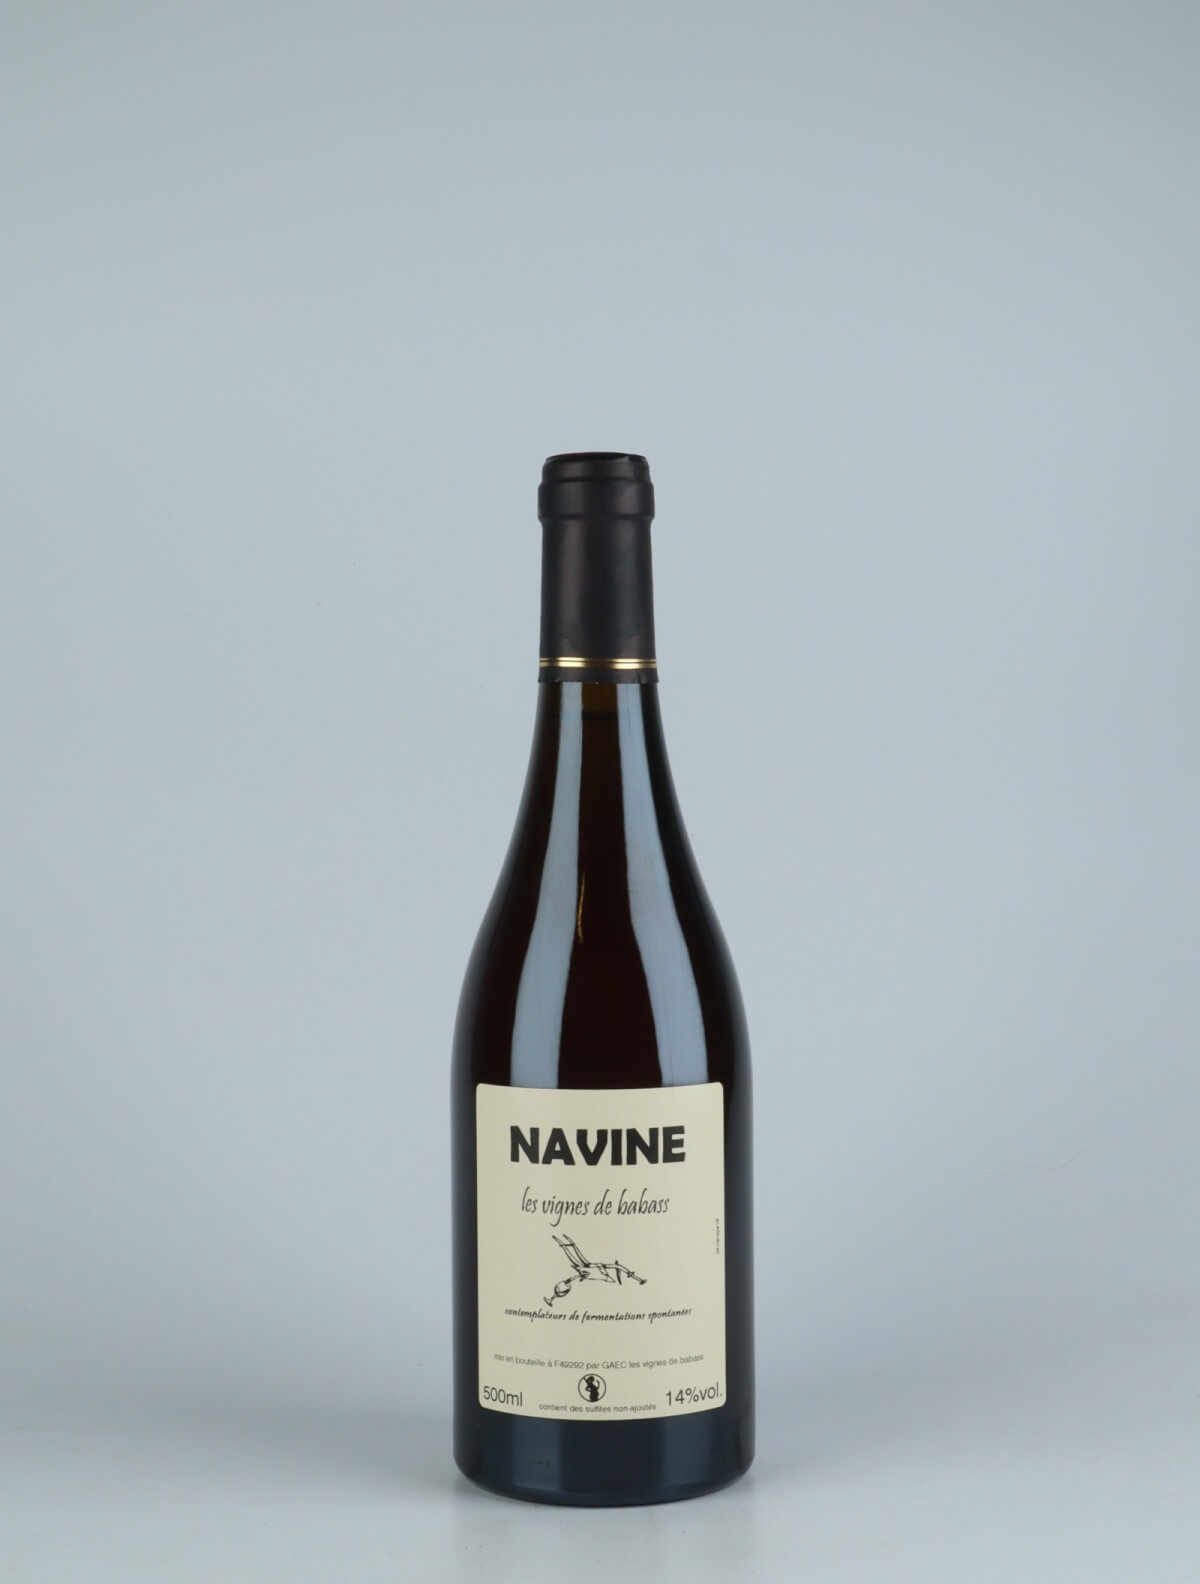 A bottle 2018 Navine Sweet wine from Les Vignes de Babass, Loire in France